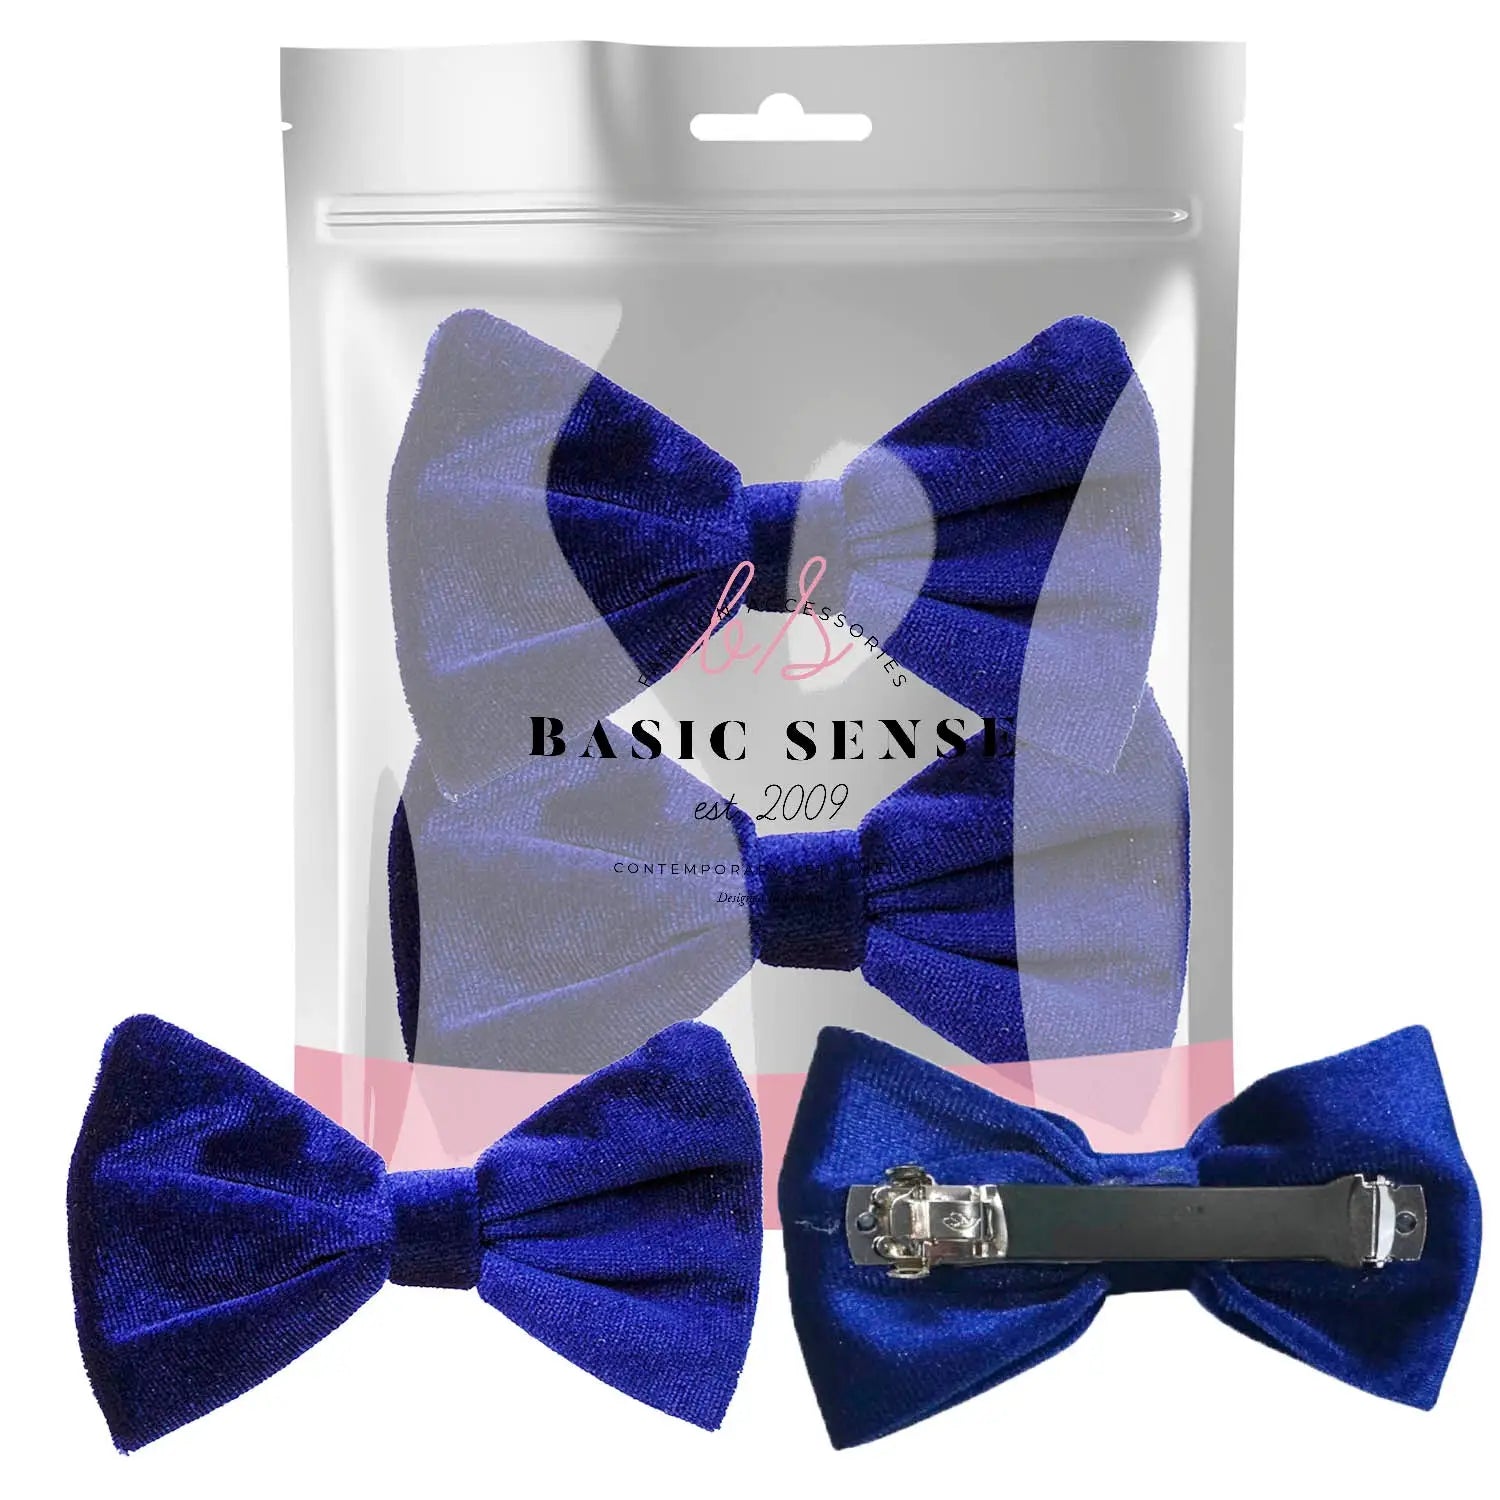 Blue velvet bow barrette hair clip on white background